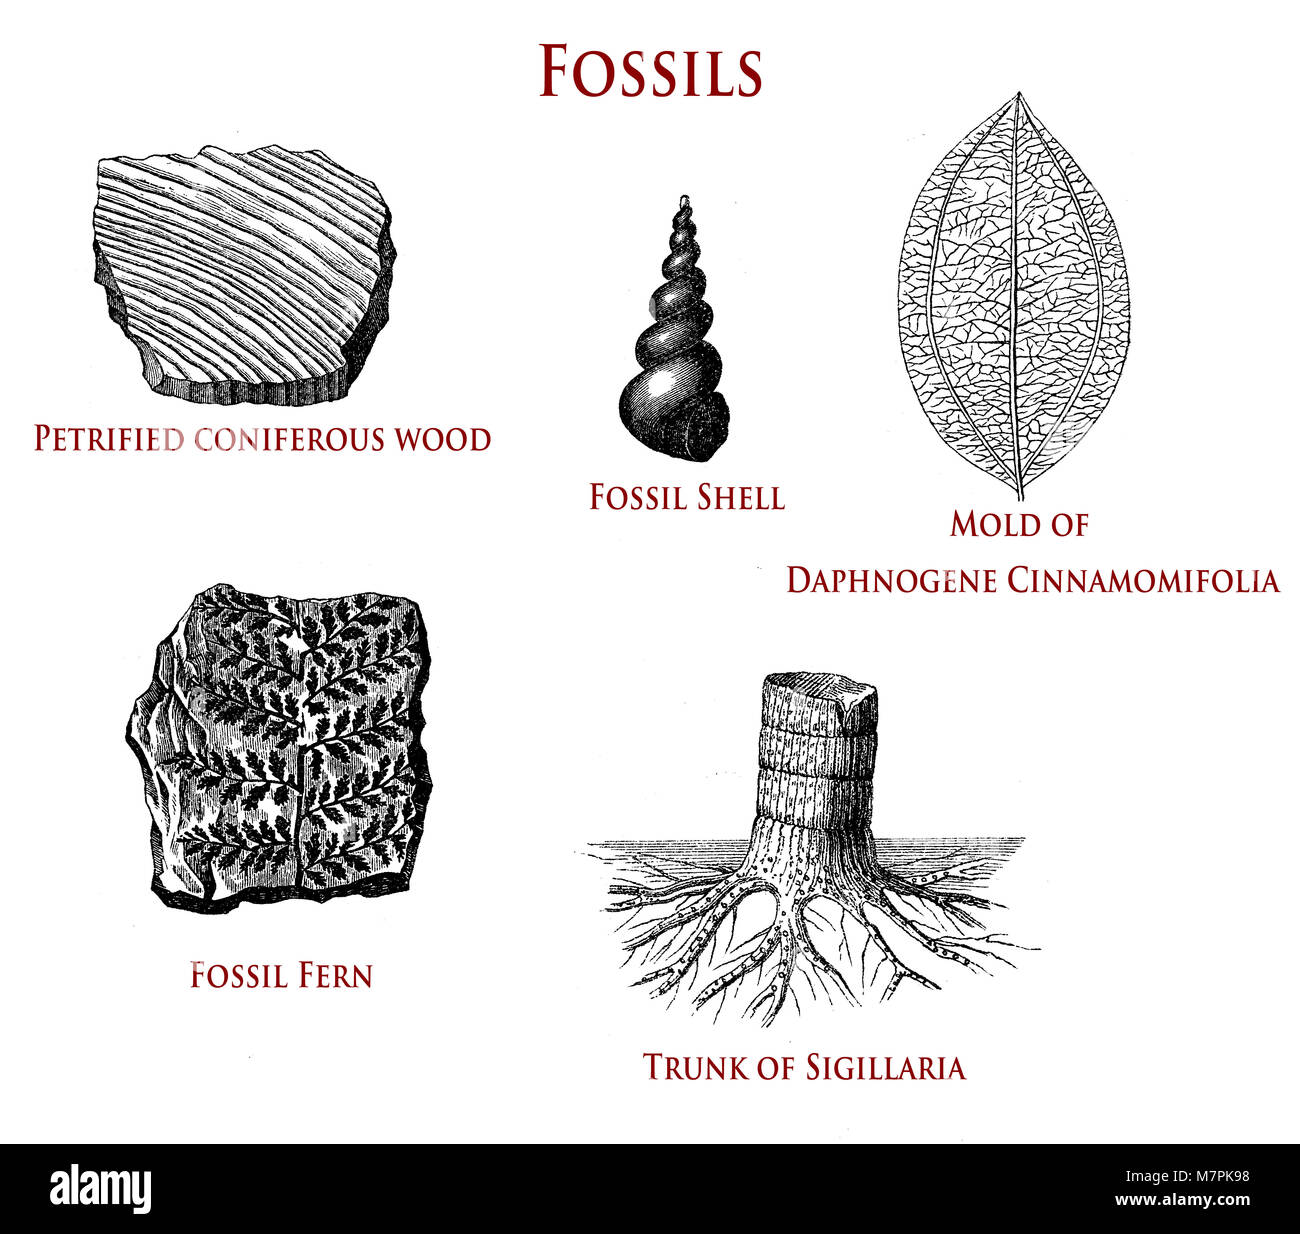 Illustrazione vintage di fossili: pietrificato di legno di conifere, shell, felce,sigillaria e daphnogene cinnamomifolia Foto Stock